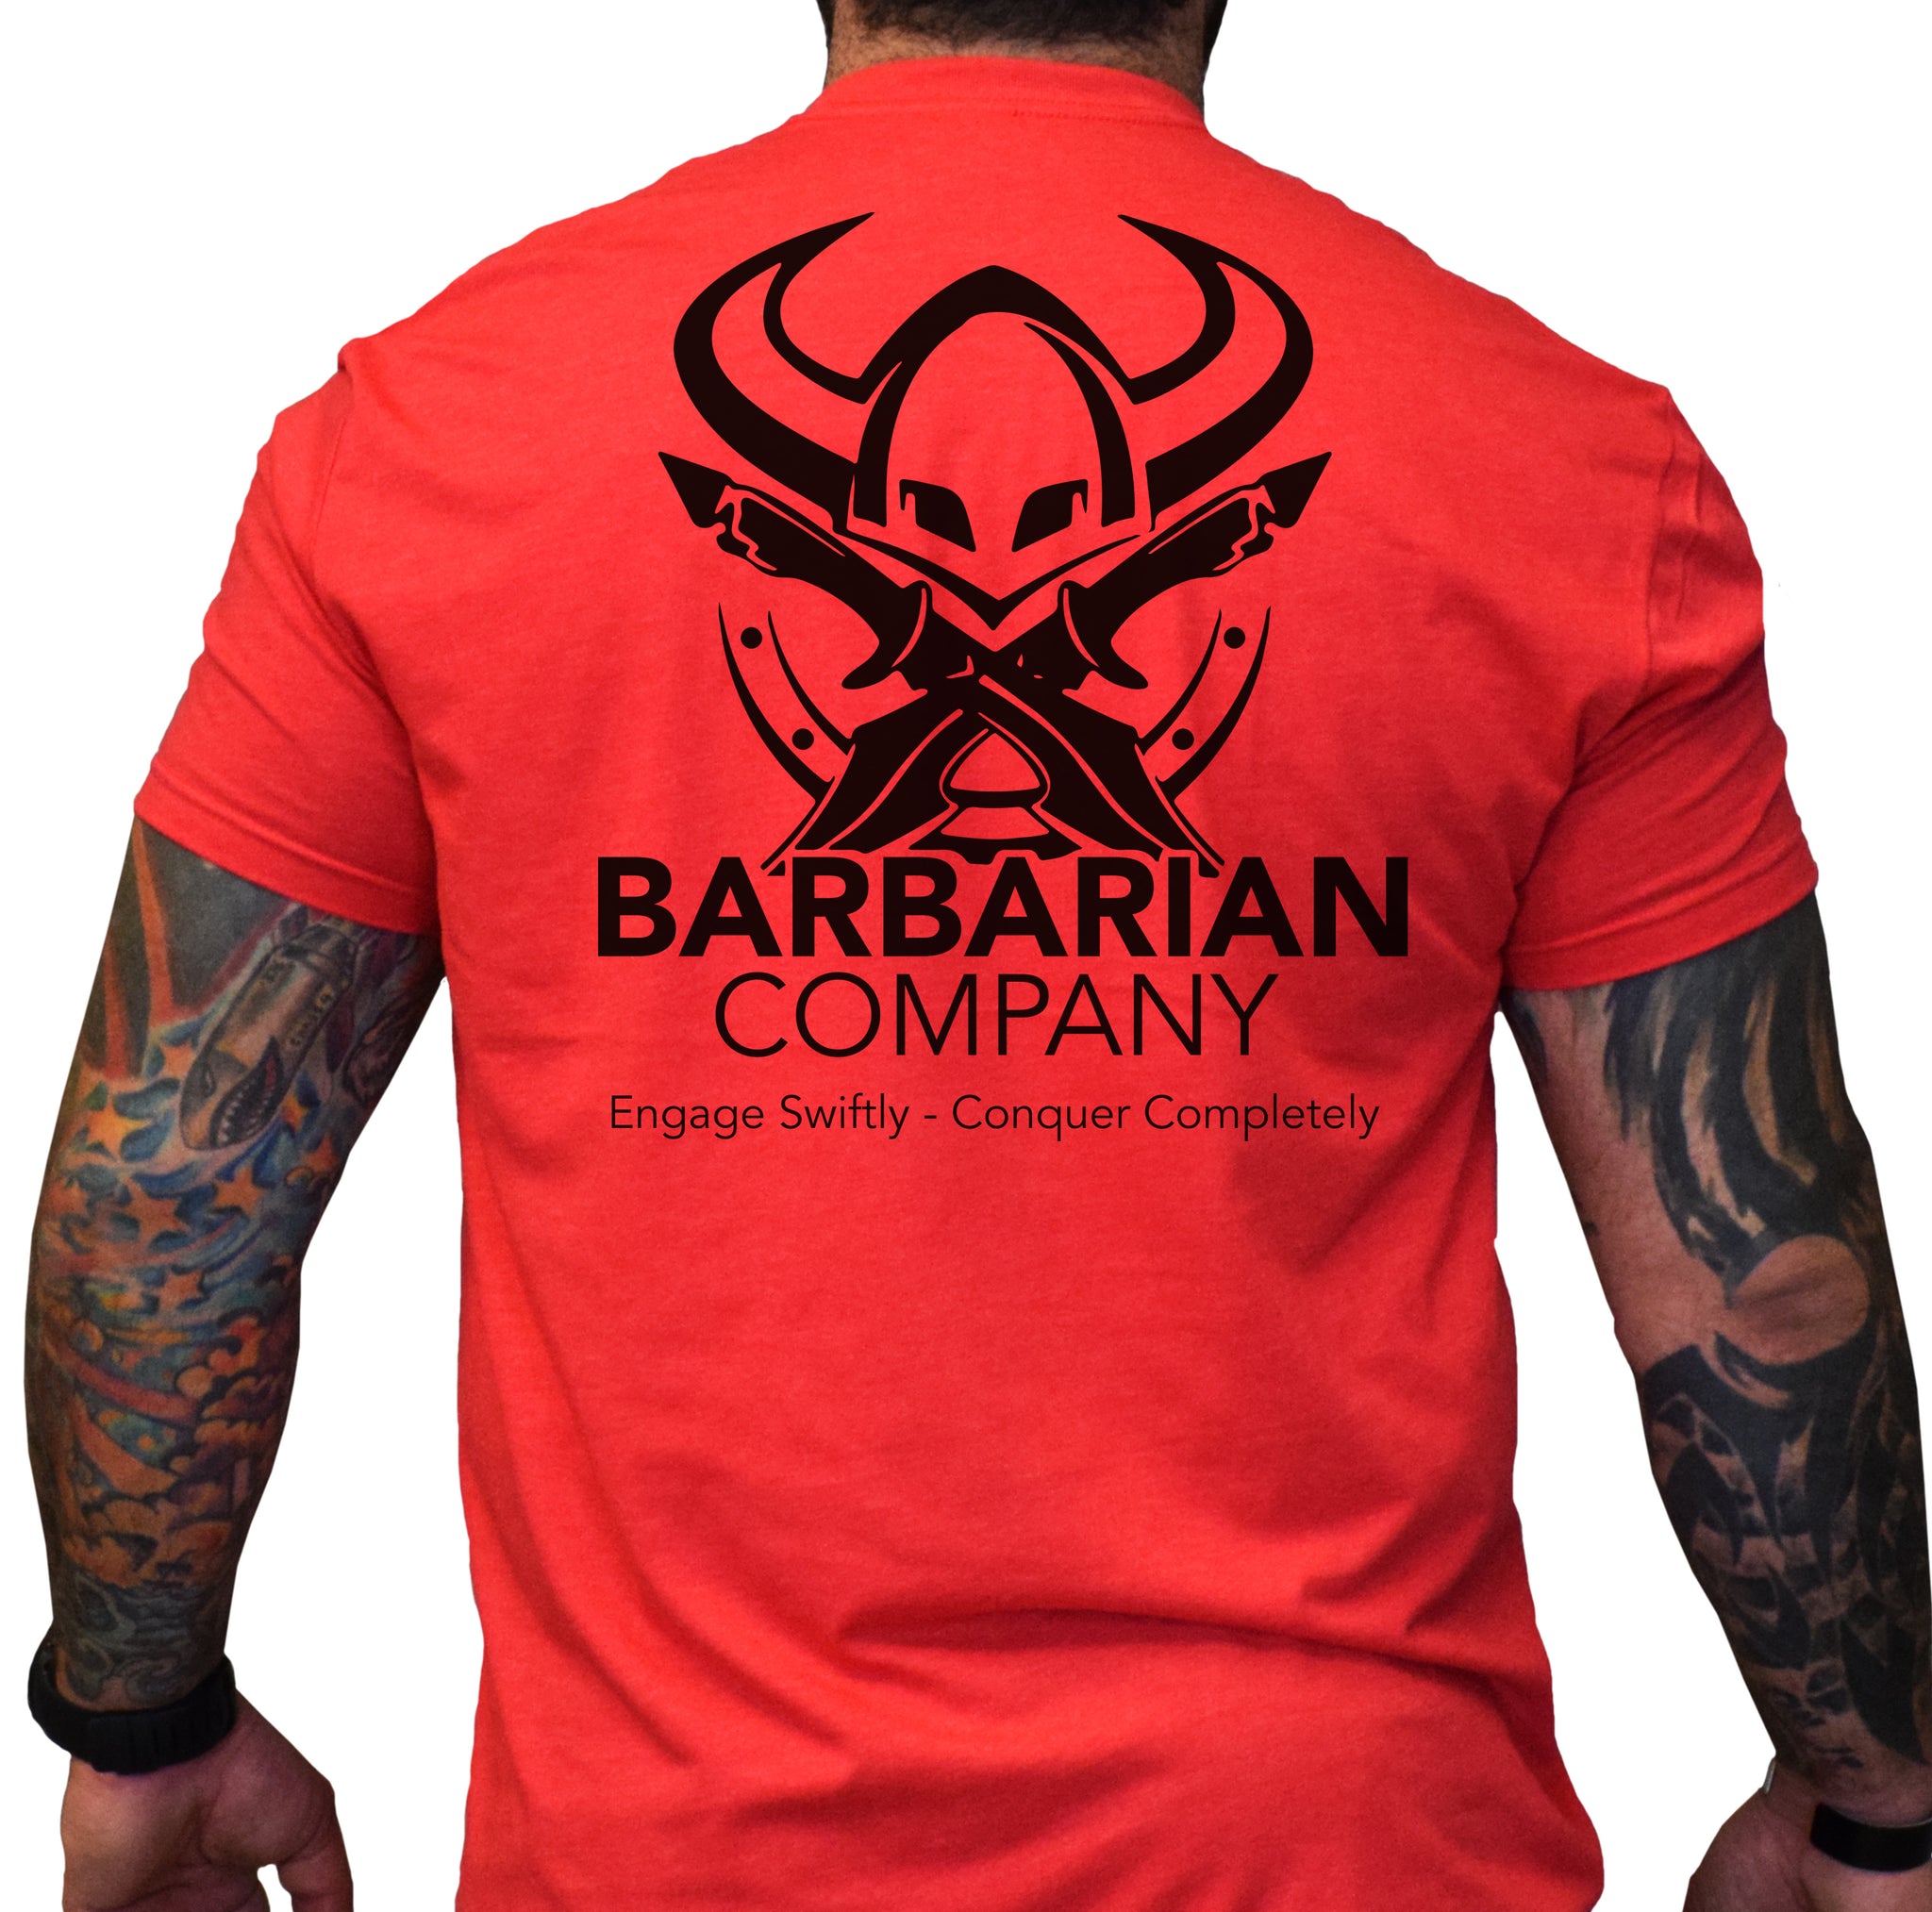 Barbarian Company Shirts